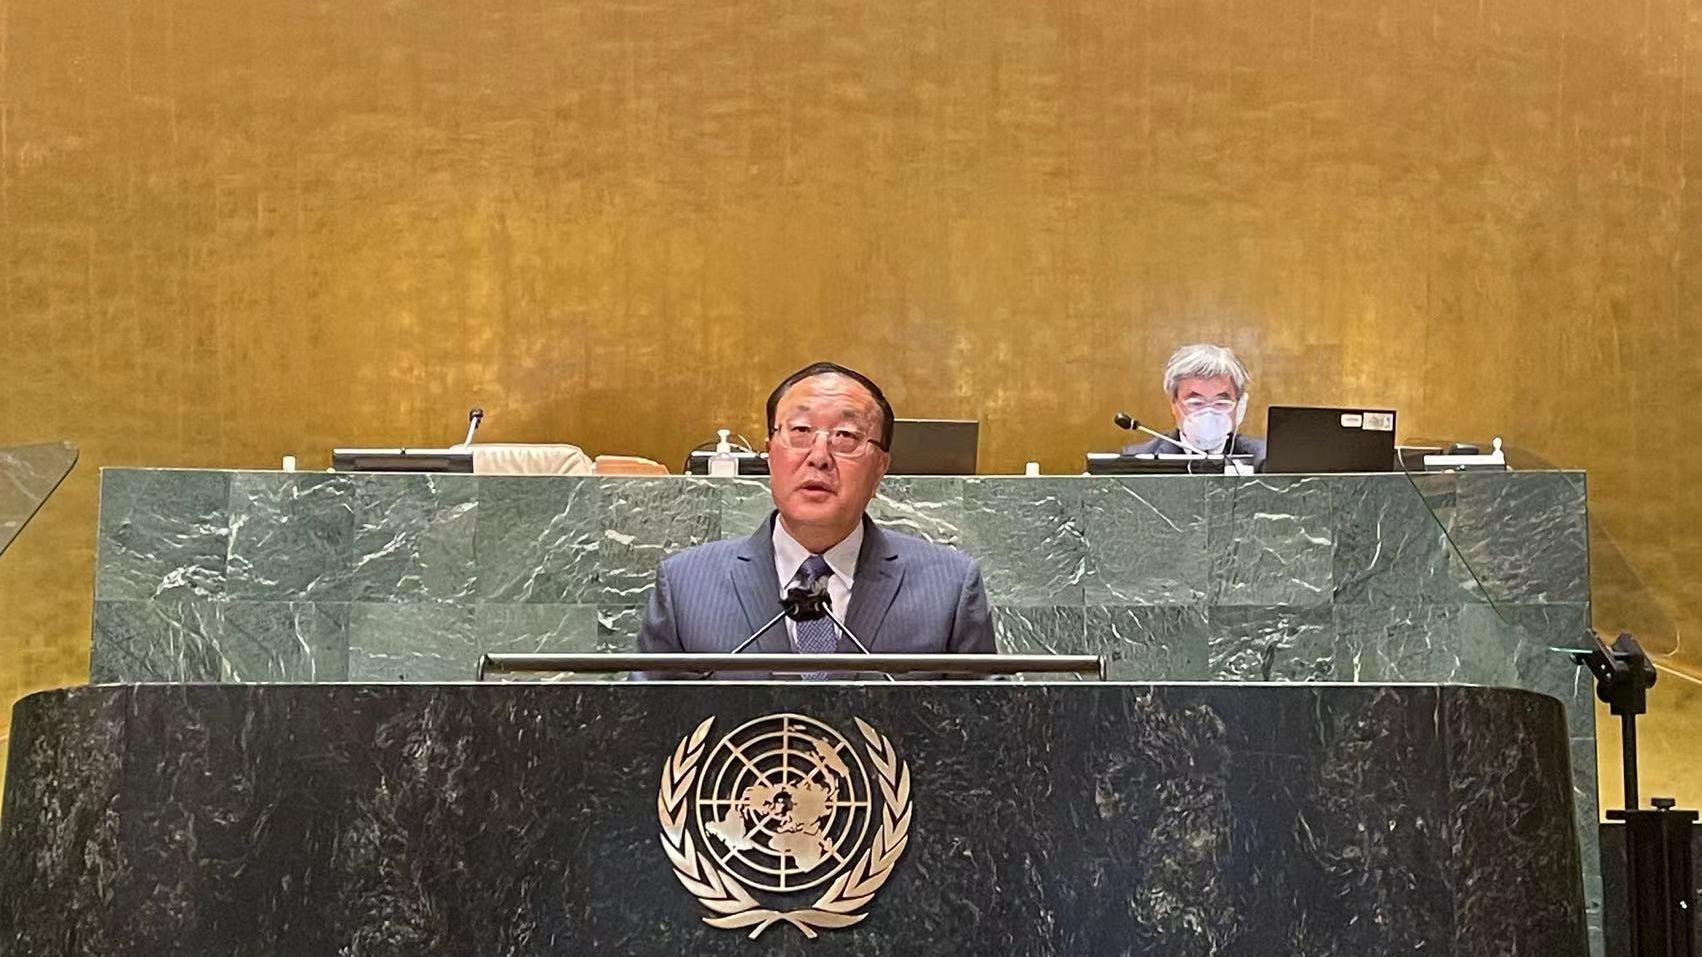 نماینده دائمی چین در سازمان ملل: چین همواره دوست قابل اعتماد و شریکی صادق برای کشورهای در حال توسعه بوده استا